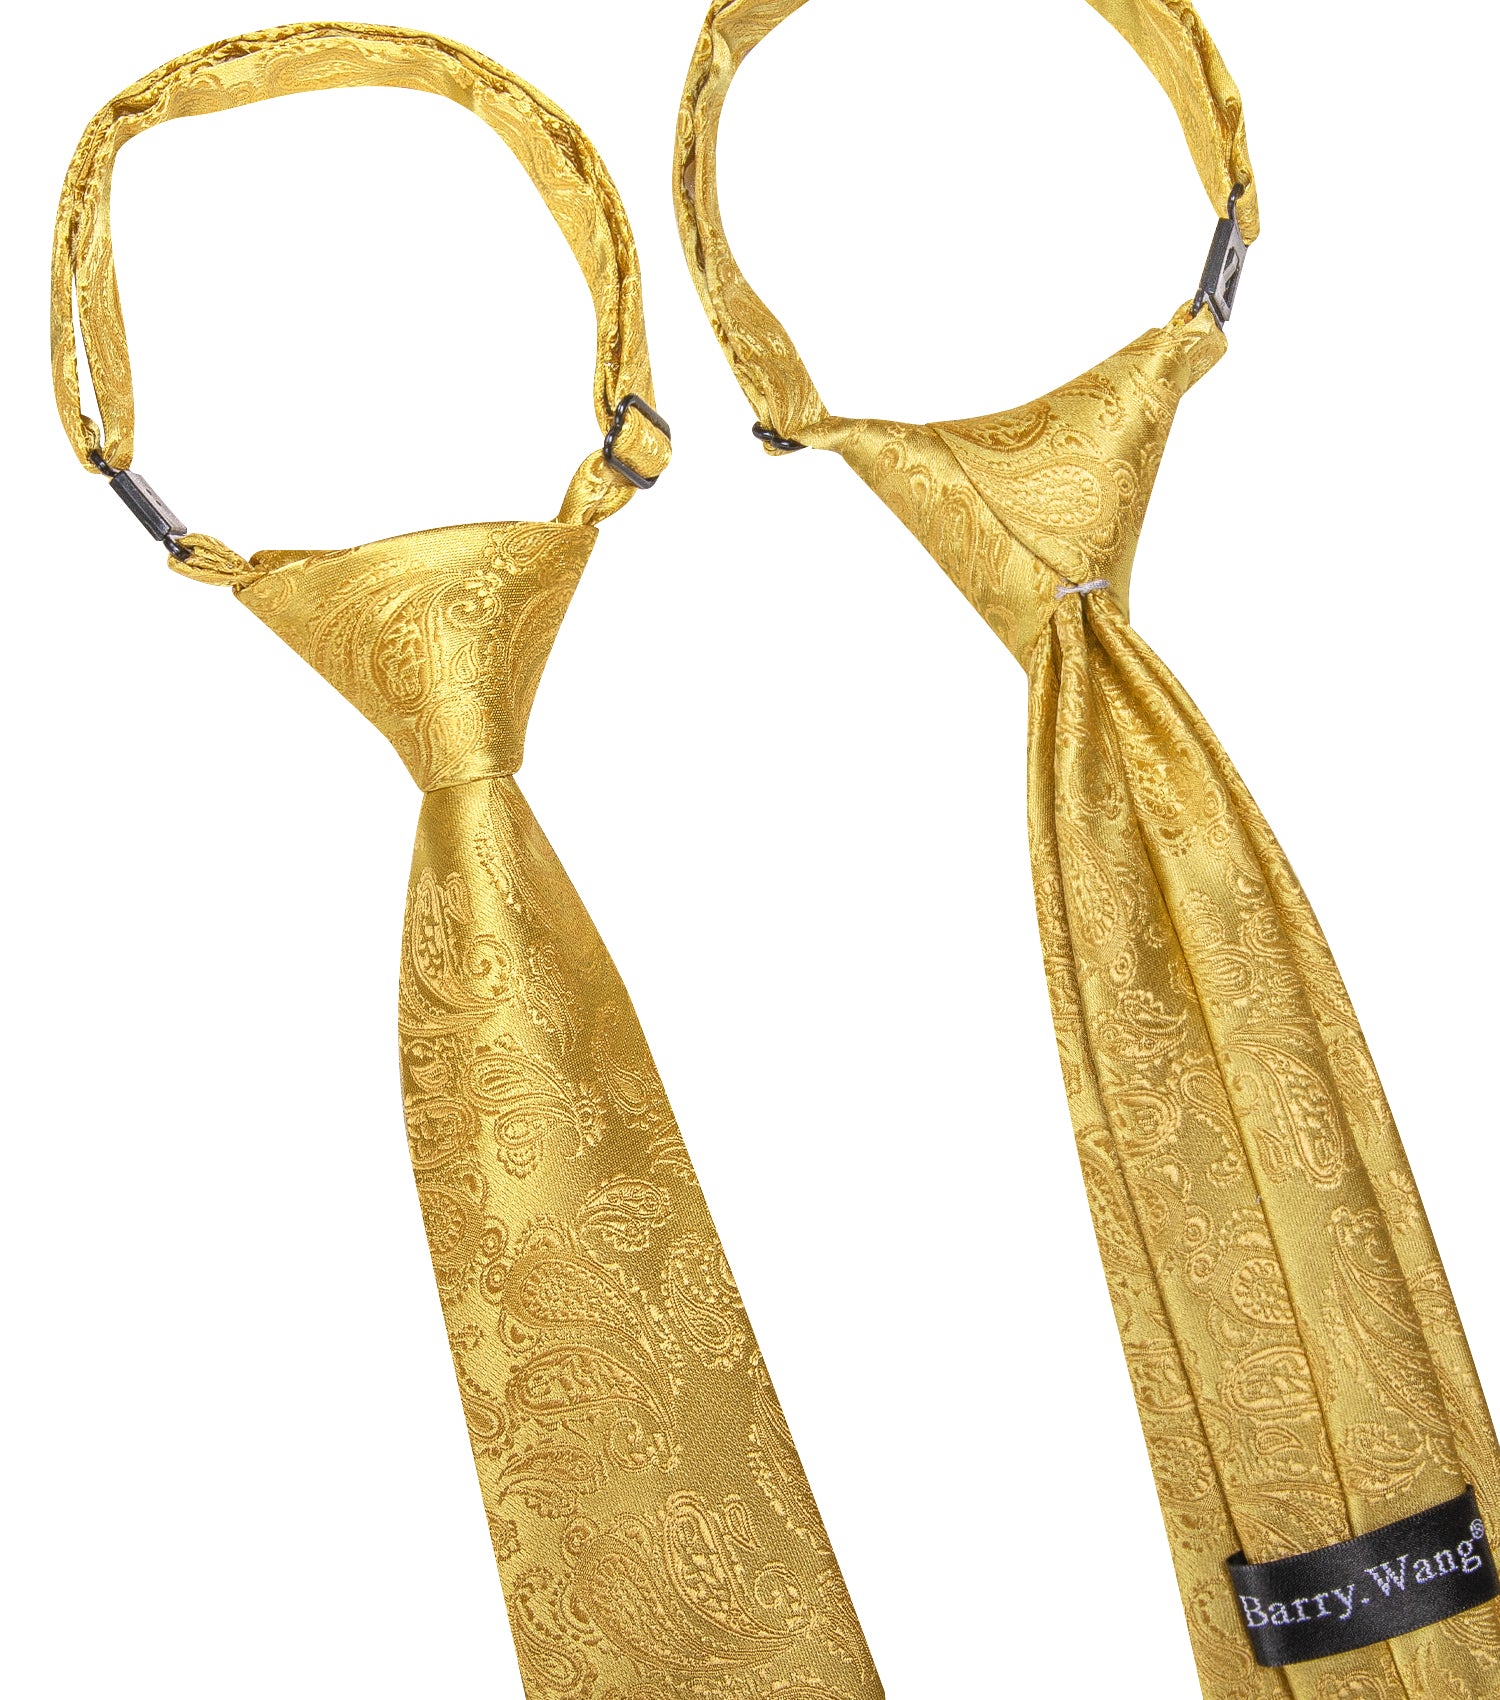 Barry.wang Kids Tie Gold Woven Paisley Children's Silk Tie Hanky Set